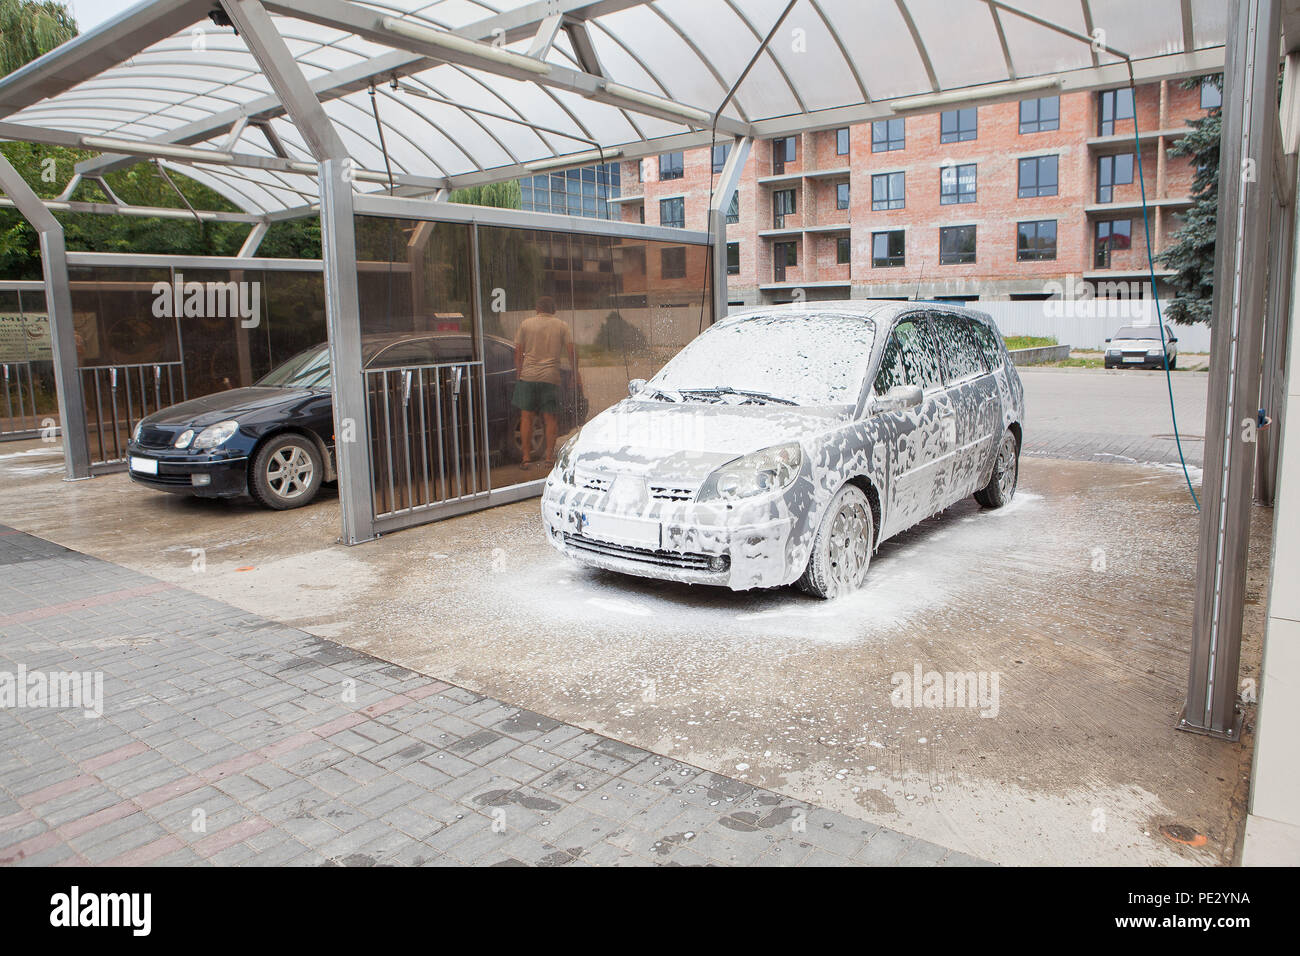 Car wash with foam in car wash station. Carwash. Washing machine